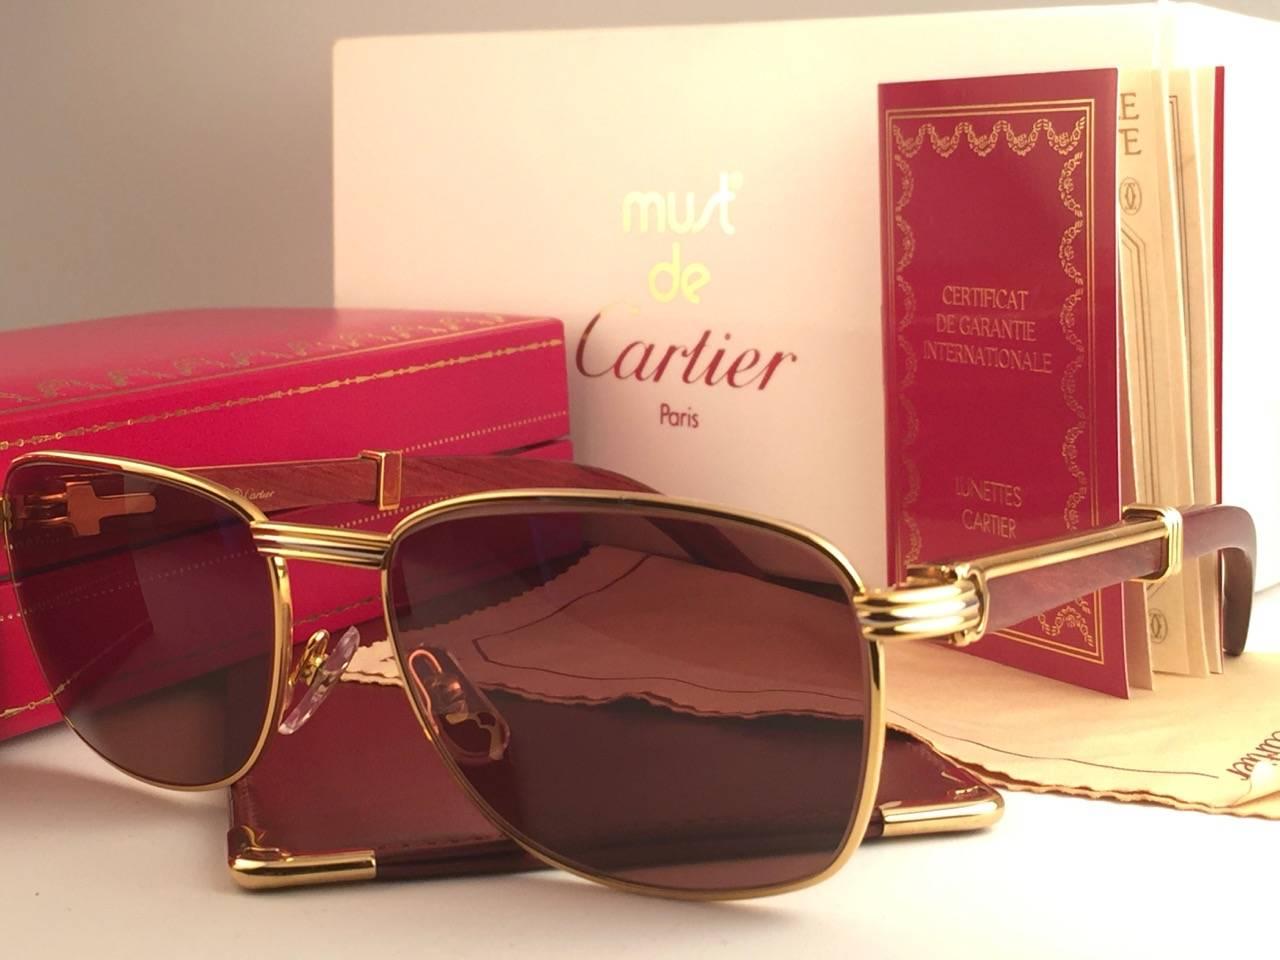 Neu 1990 Cartier Full Set Amboise Bubinga Hardwood Sonnenbrille mit neuen soliden honigbraunen (uv-Schutz) Gläsern. 
Der Rahmen ist mit der Vorderseite und den Seiten in Gelb- und Weißgold und hat die berühmten Holz & Gold Akzente Bügel.